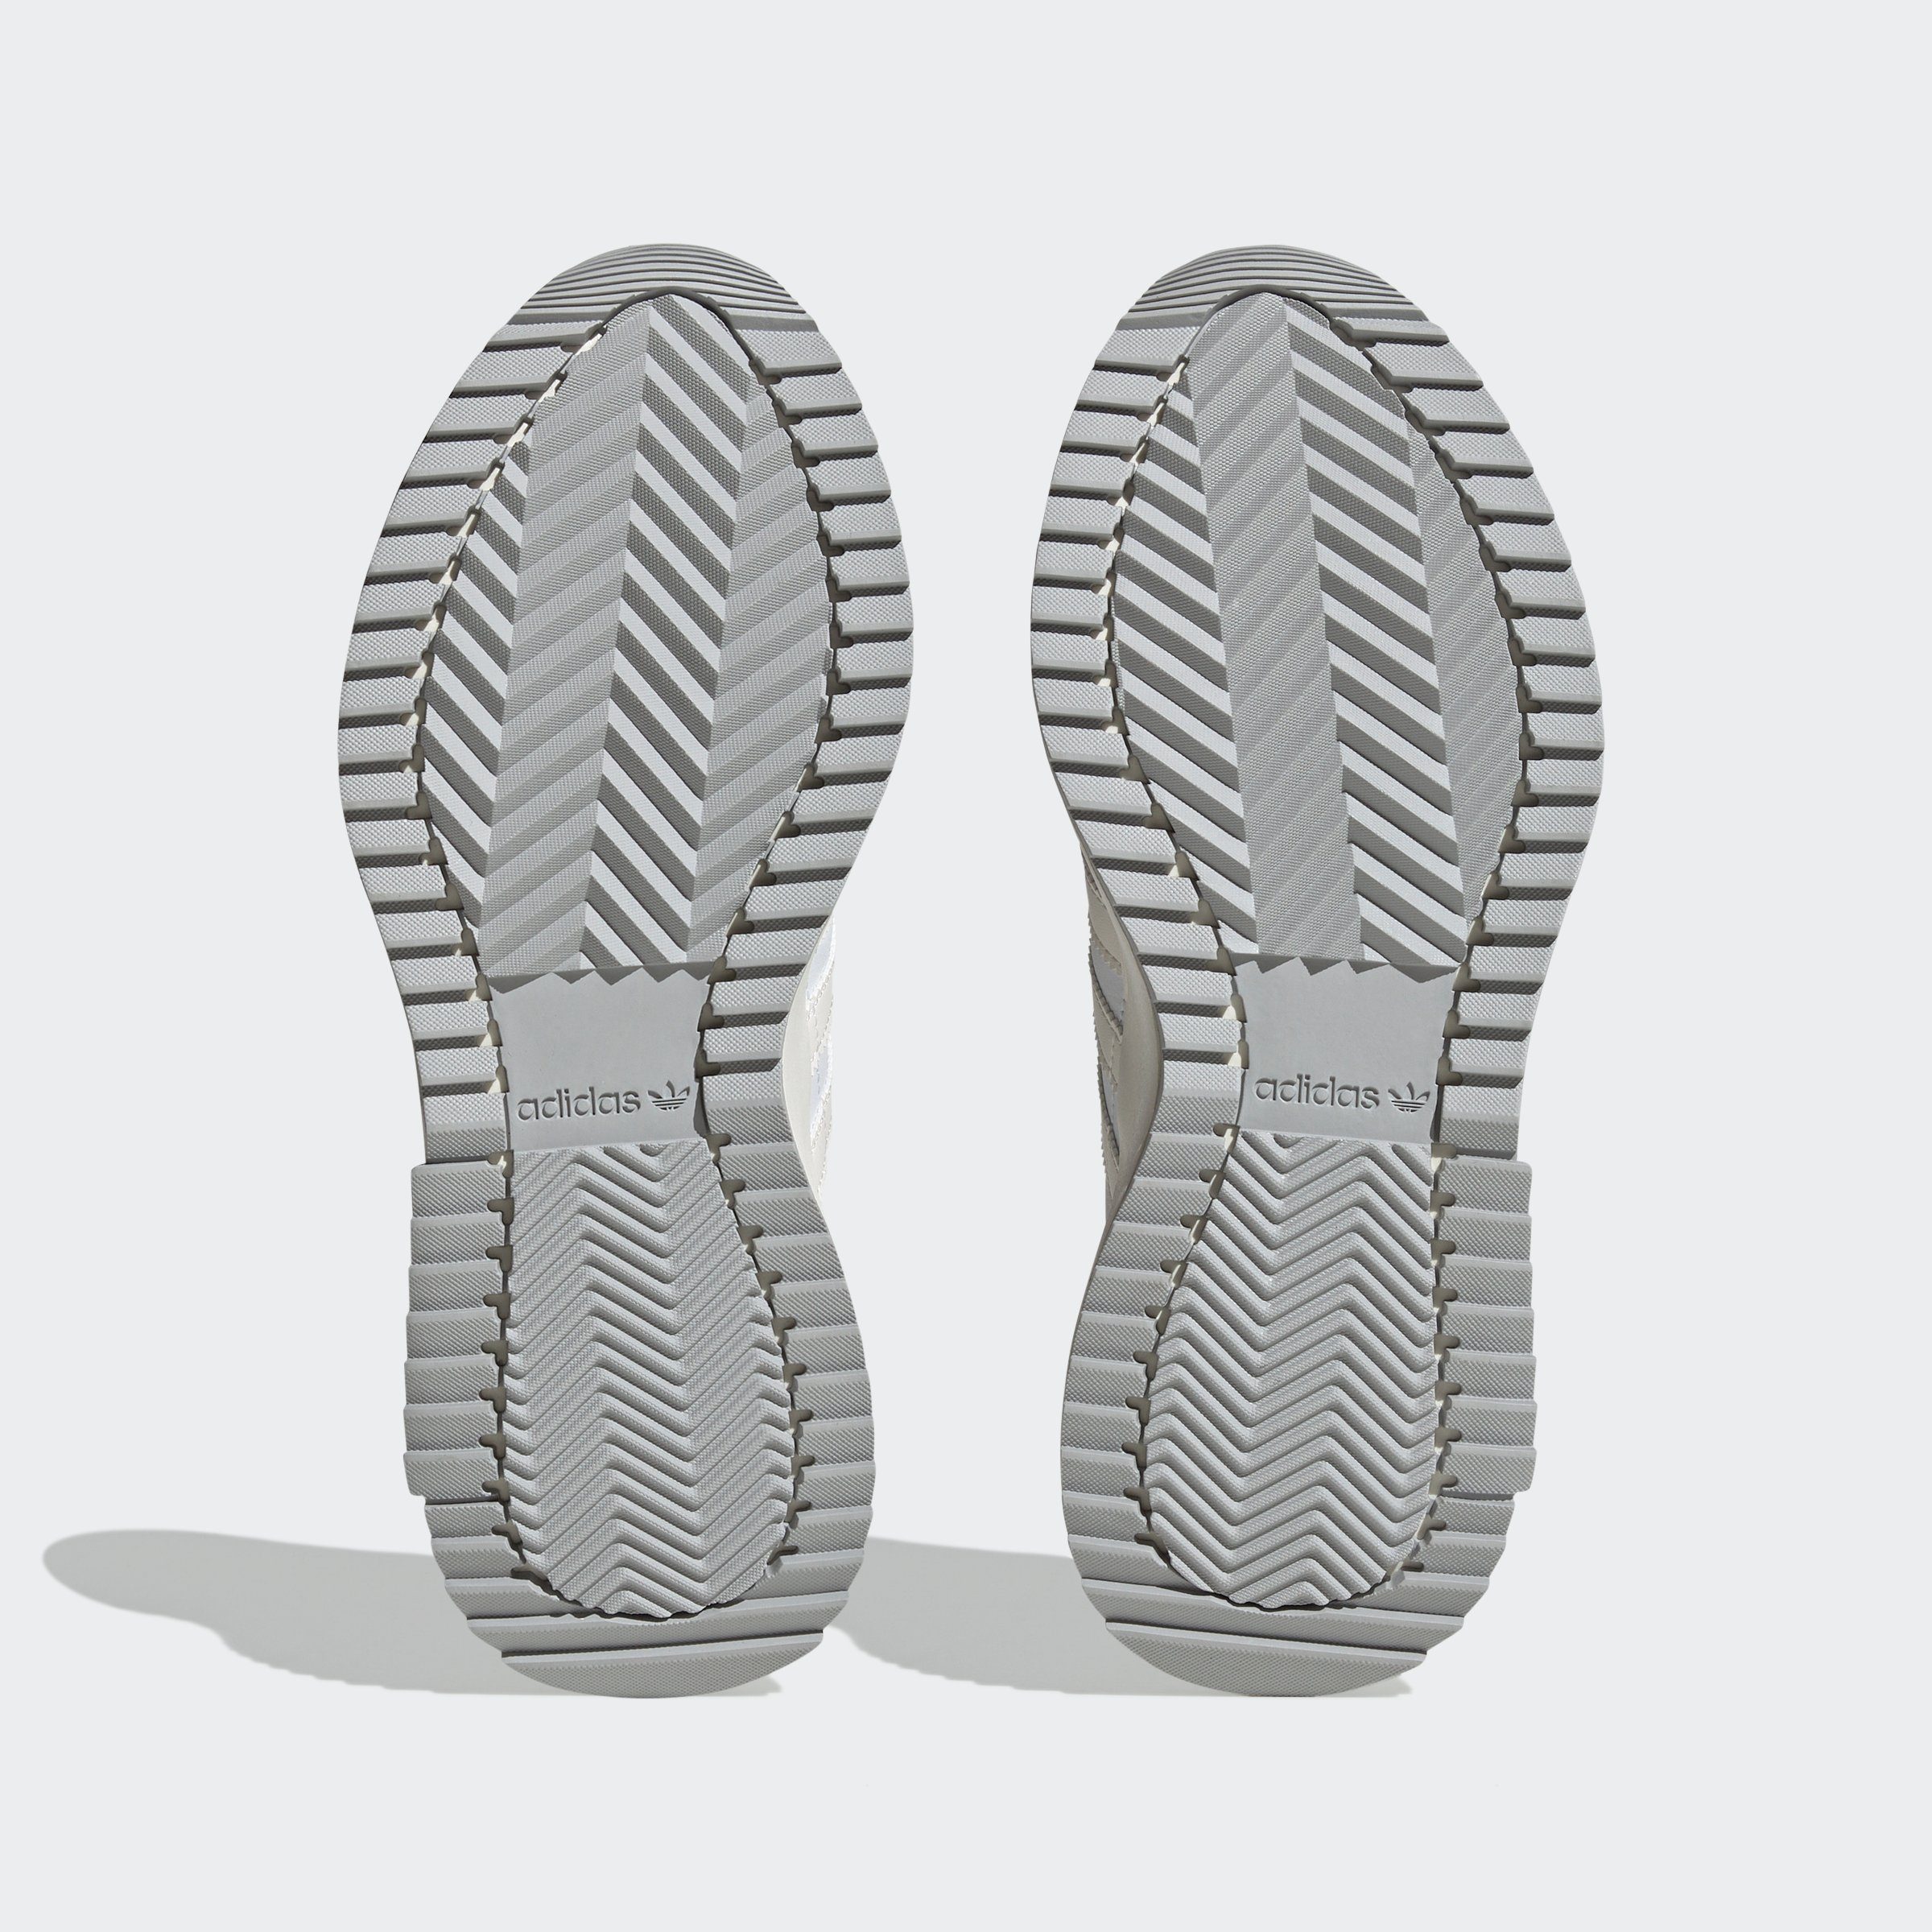 Cloud adidas / White RETROPY Sneaker Off White Originals F2 Core White /